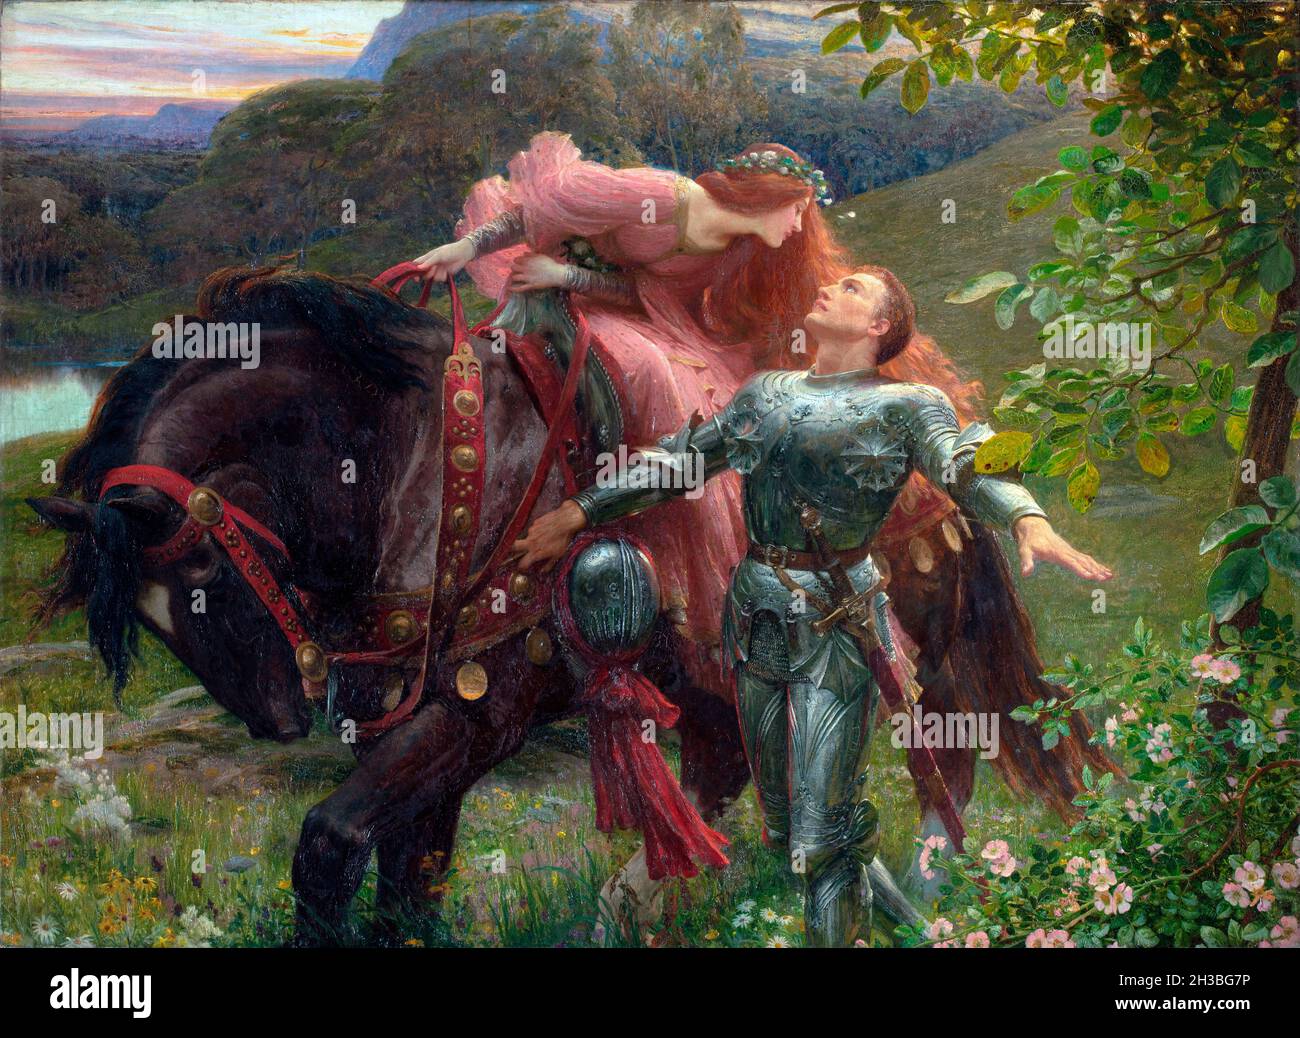 La Belle Dame sans Merci par l'artiste anglais Frank Dicksee (1853-1928), huile sur toile, 1901 Banque D'Images